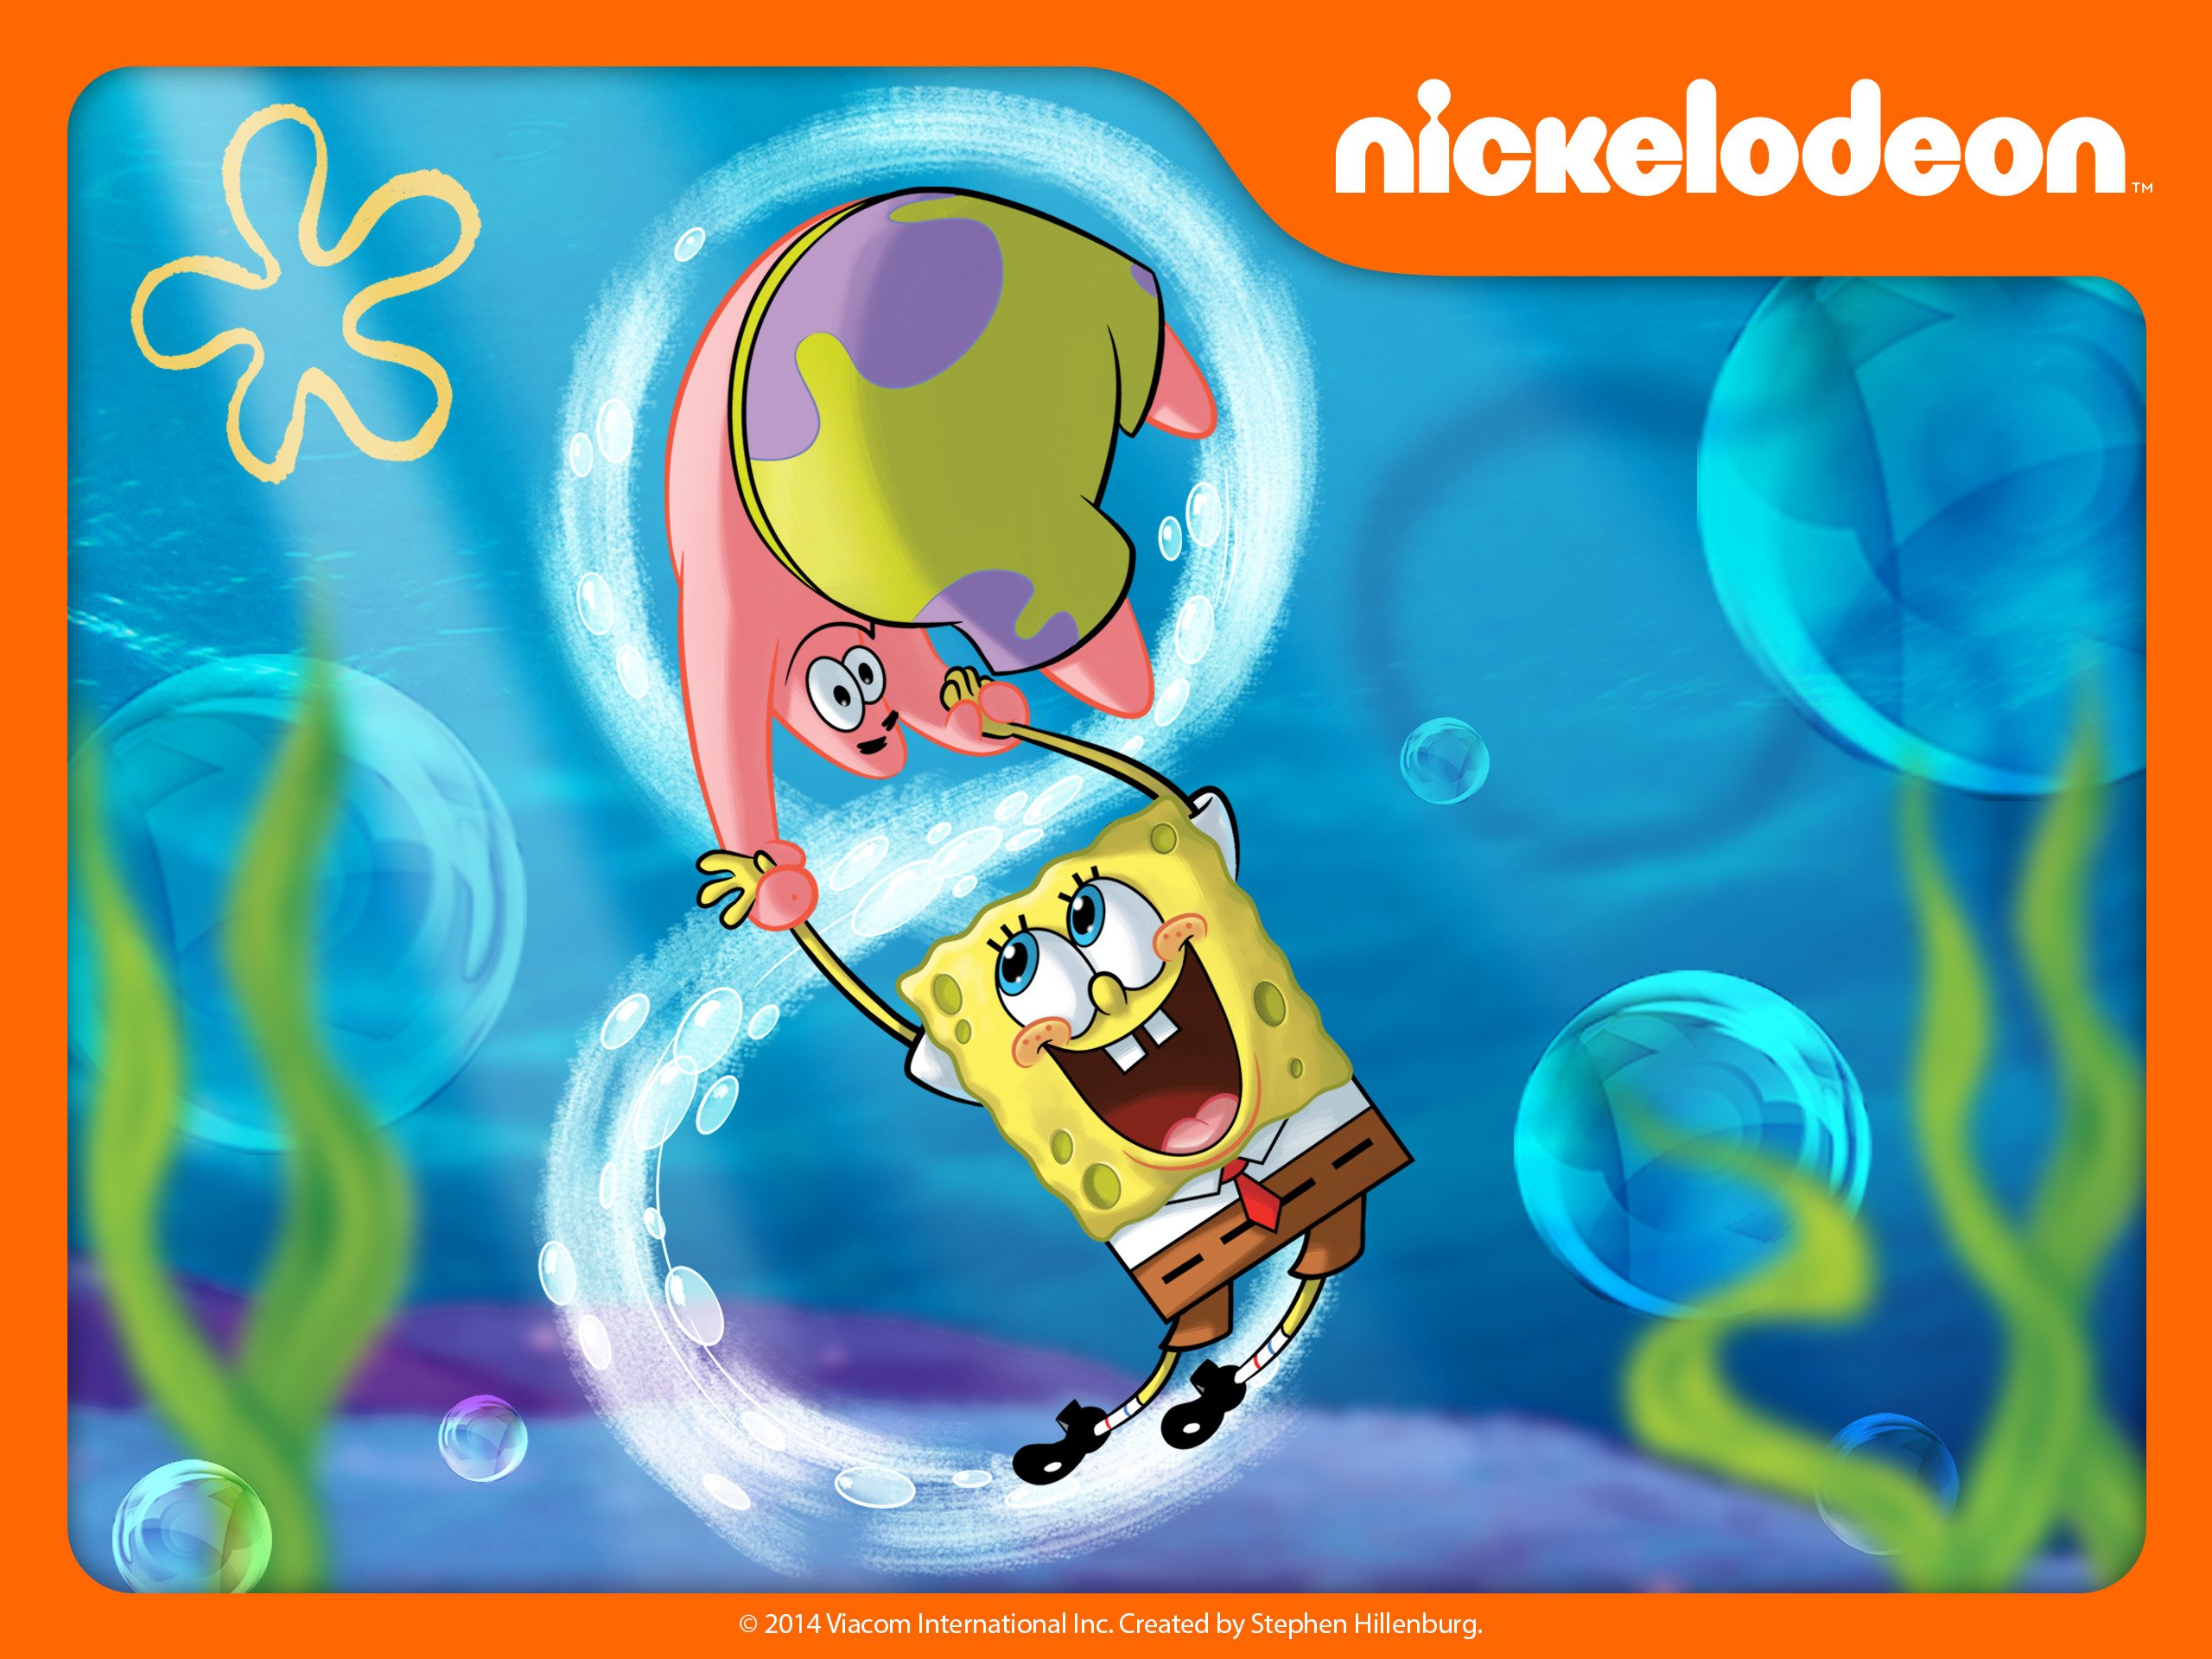 spongebob season 9 release date